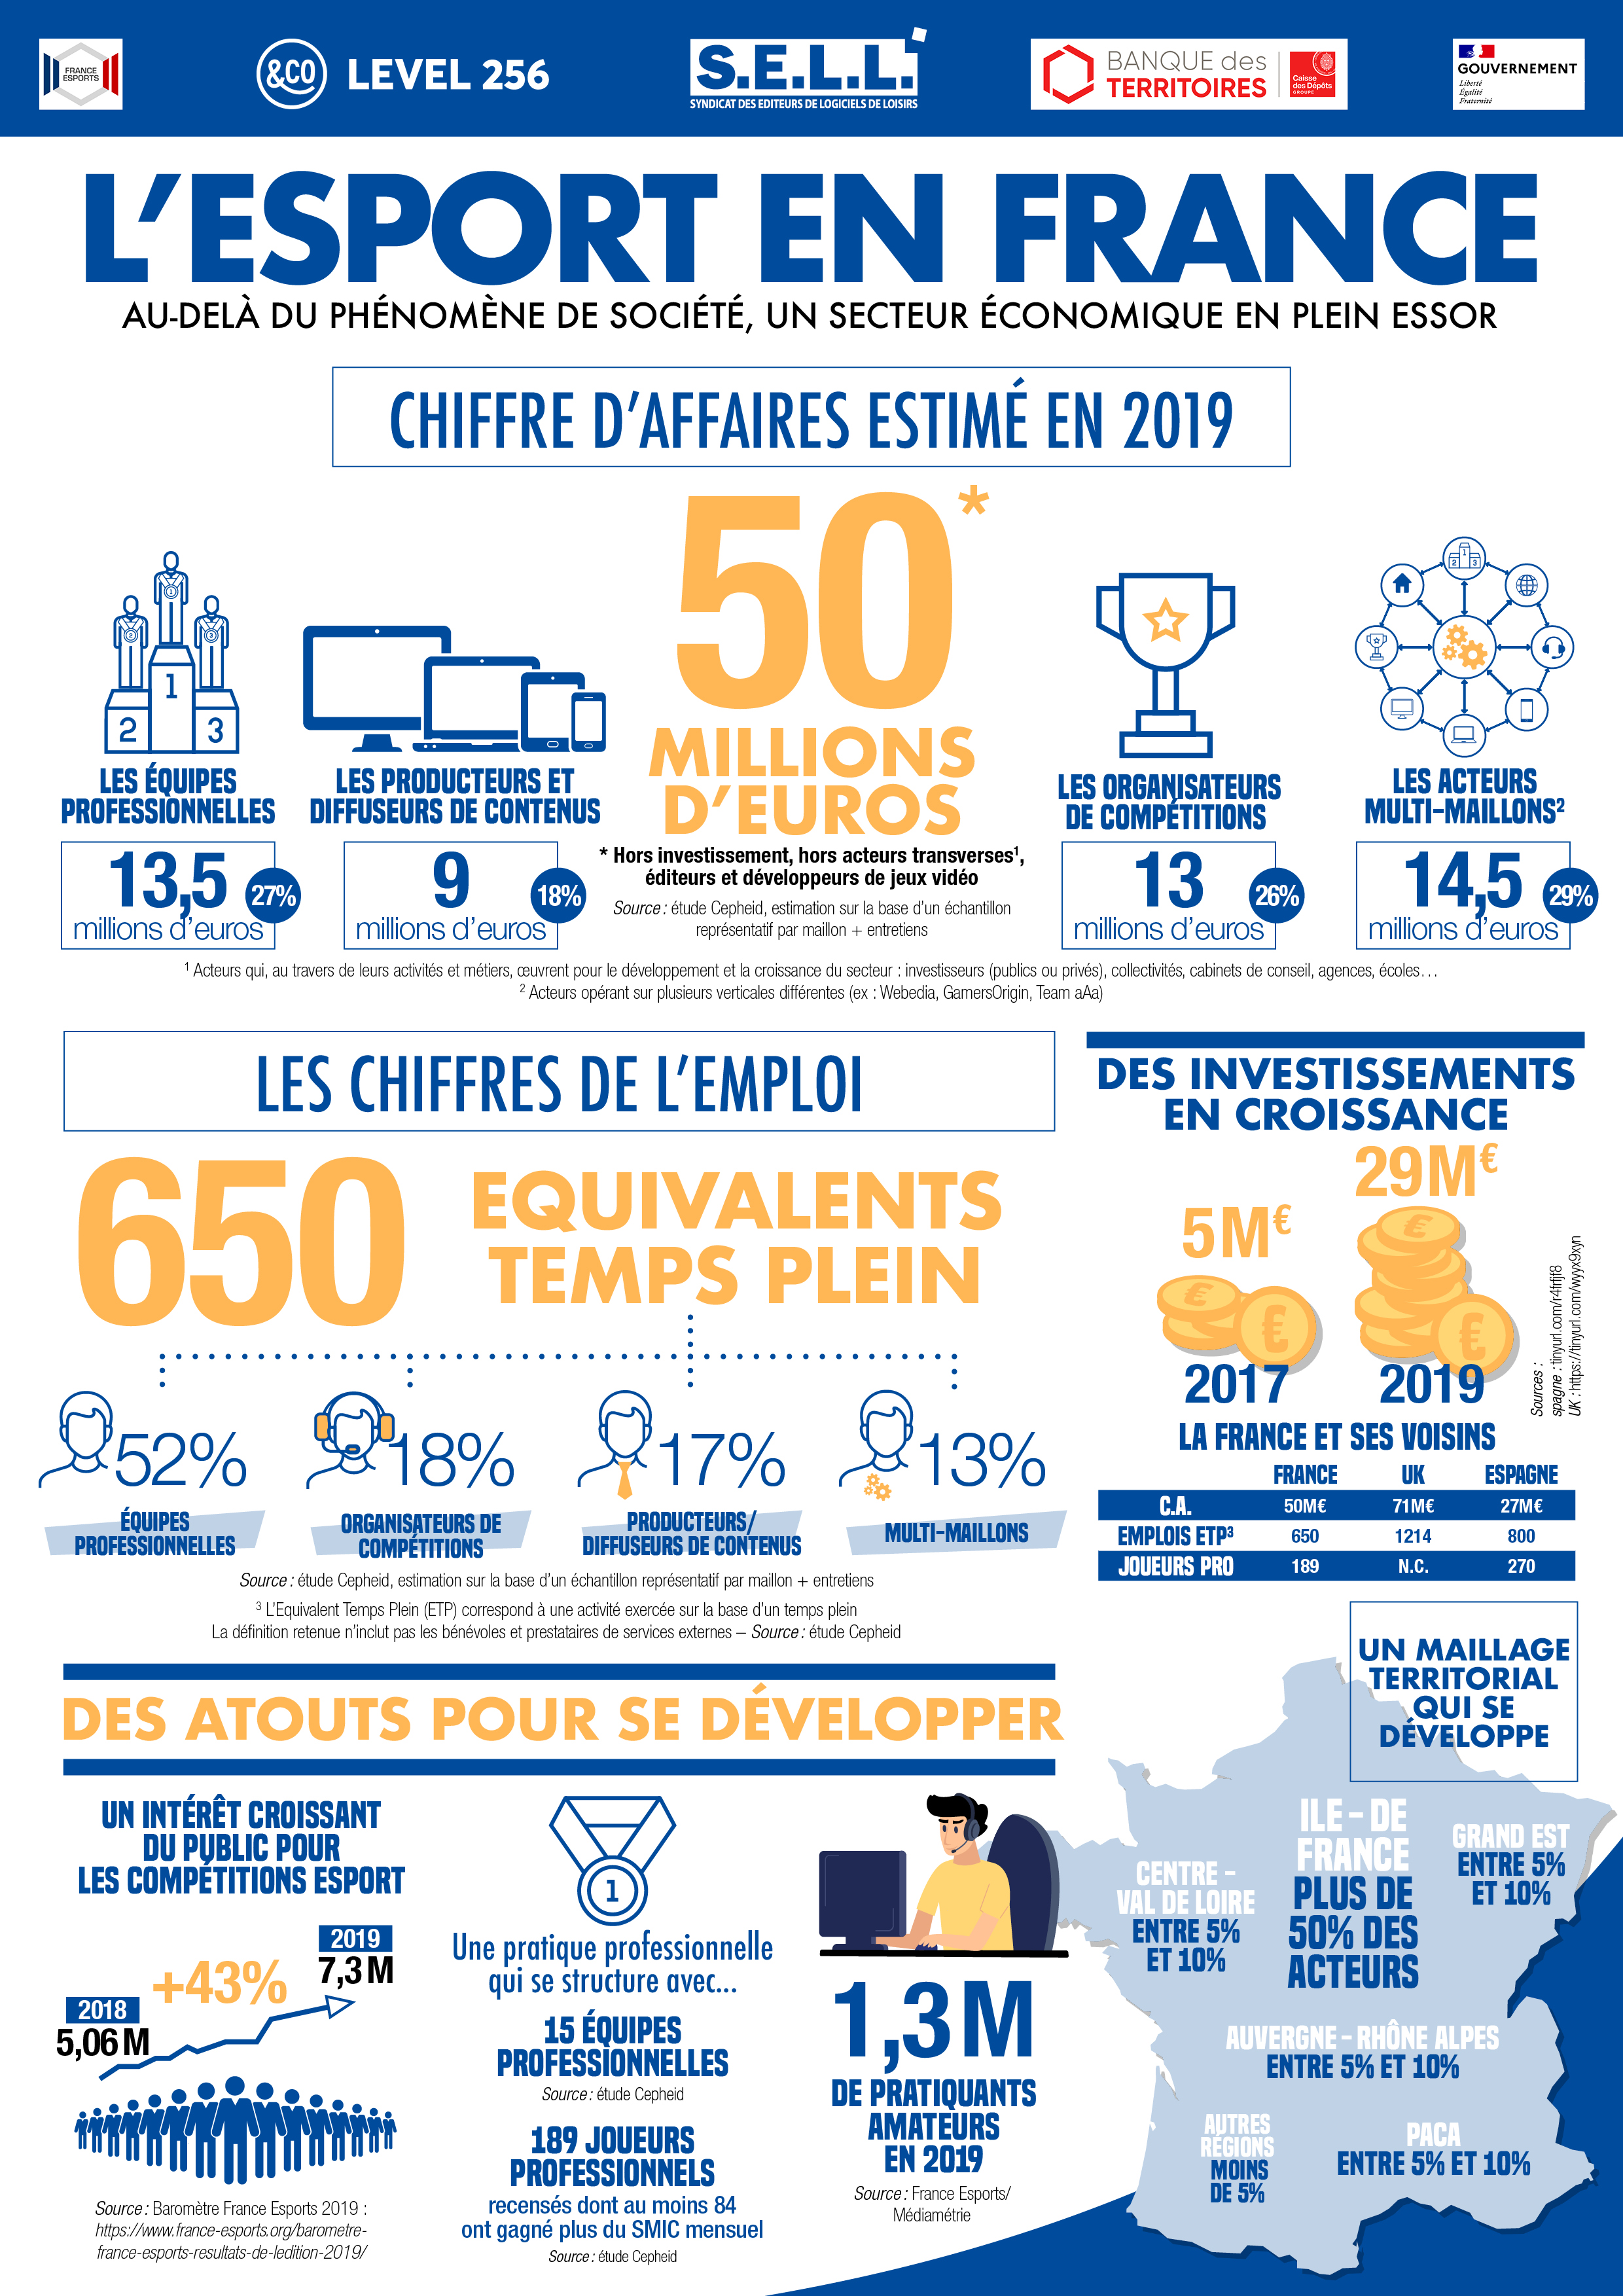 Infographie de l’Esport en France